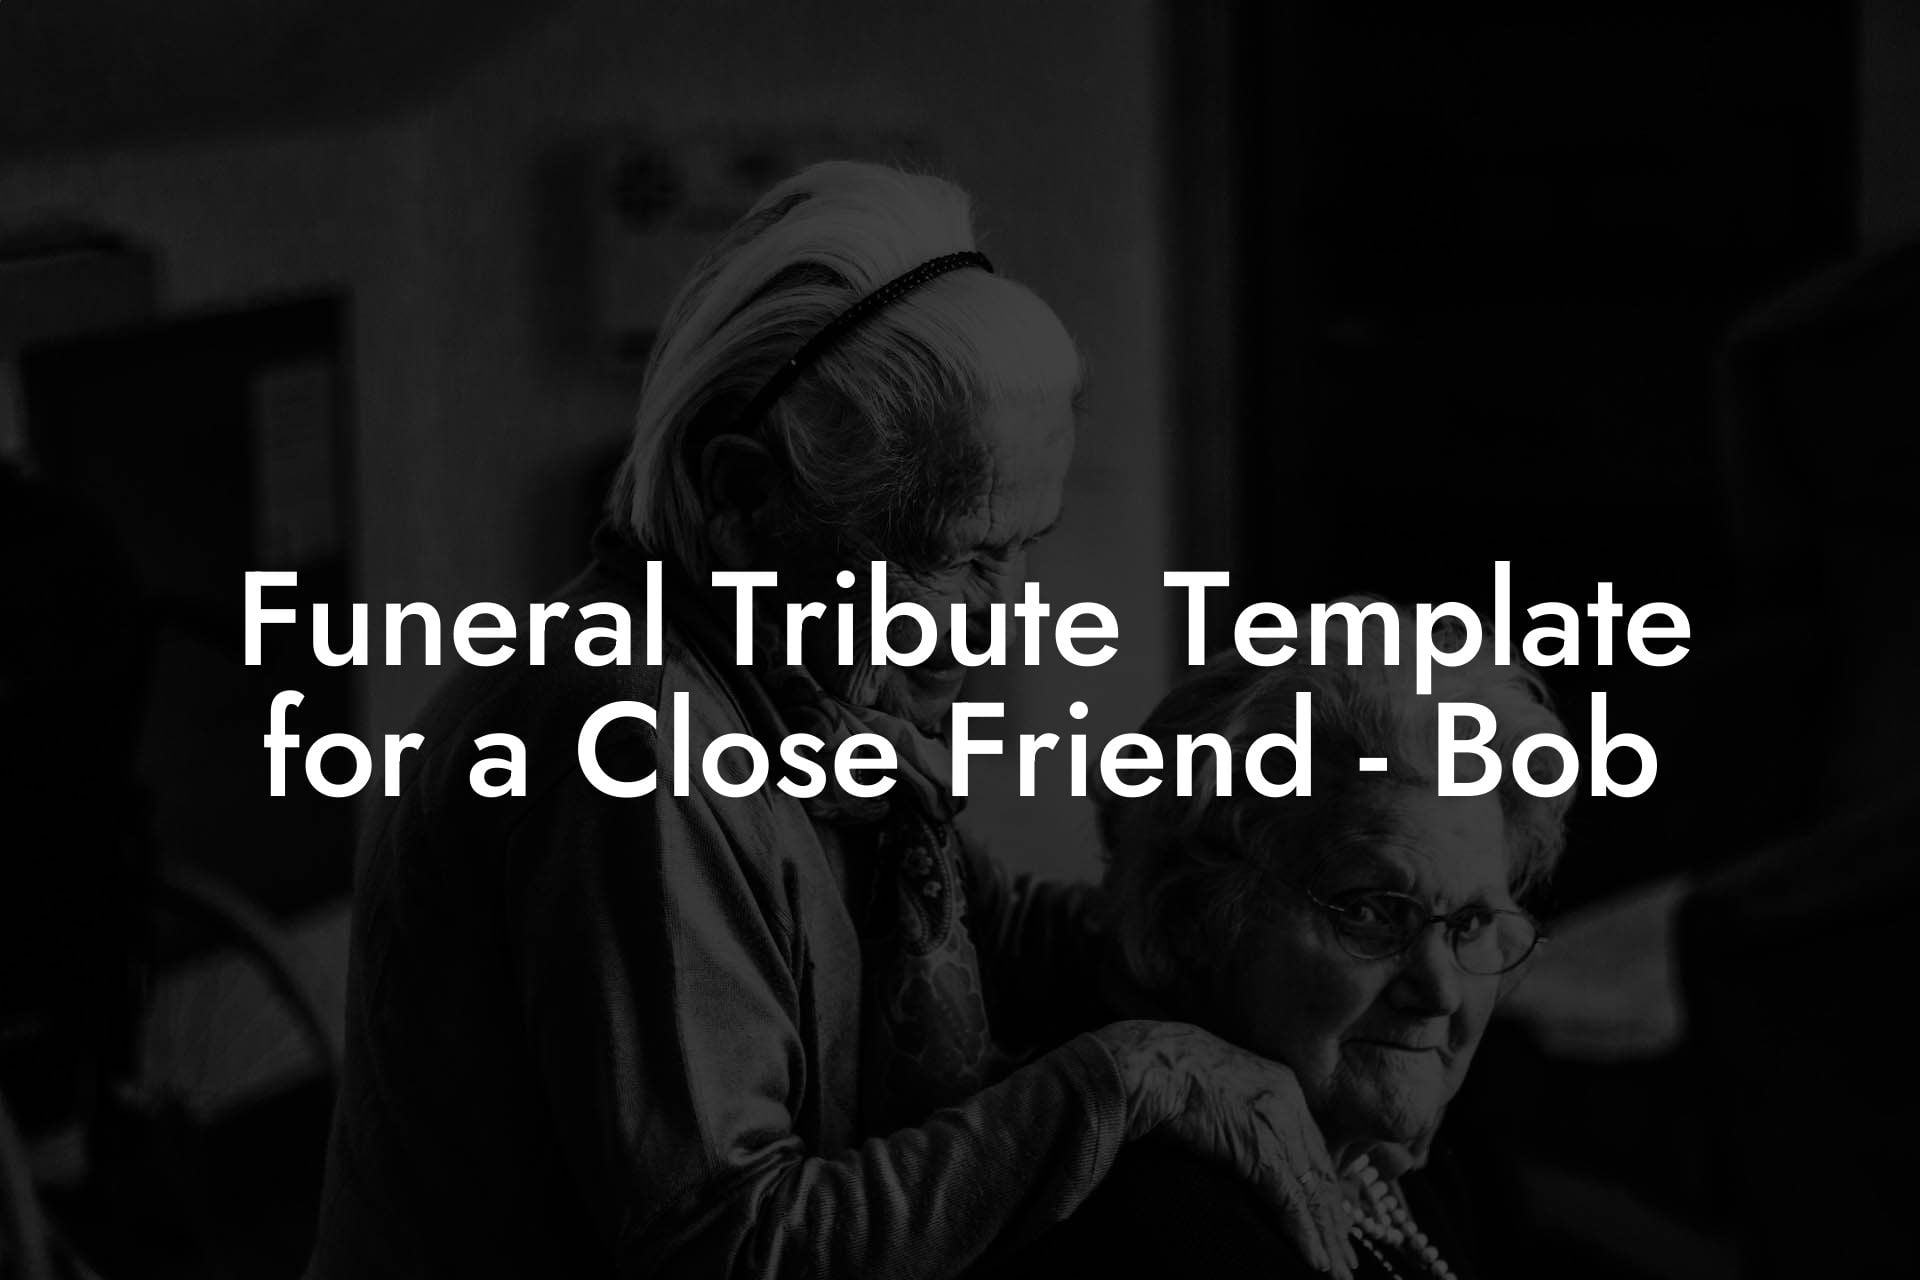 Funeral Tribute Template for a Close Friend - Bob